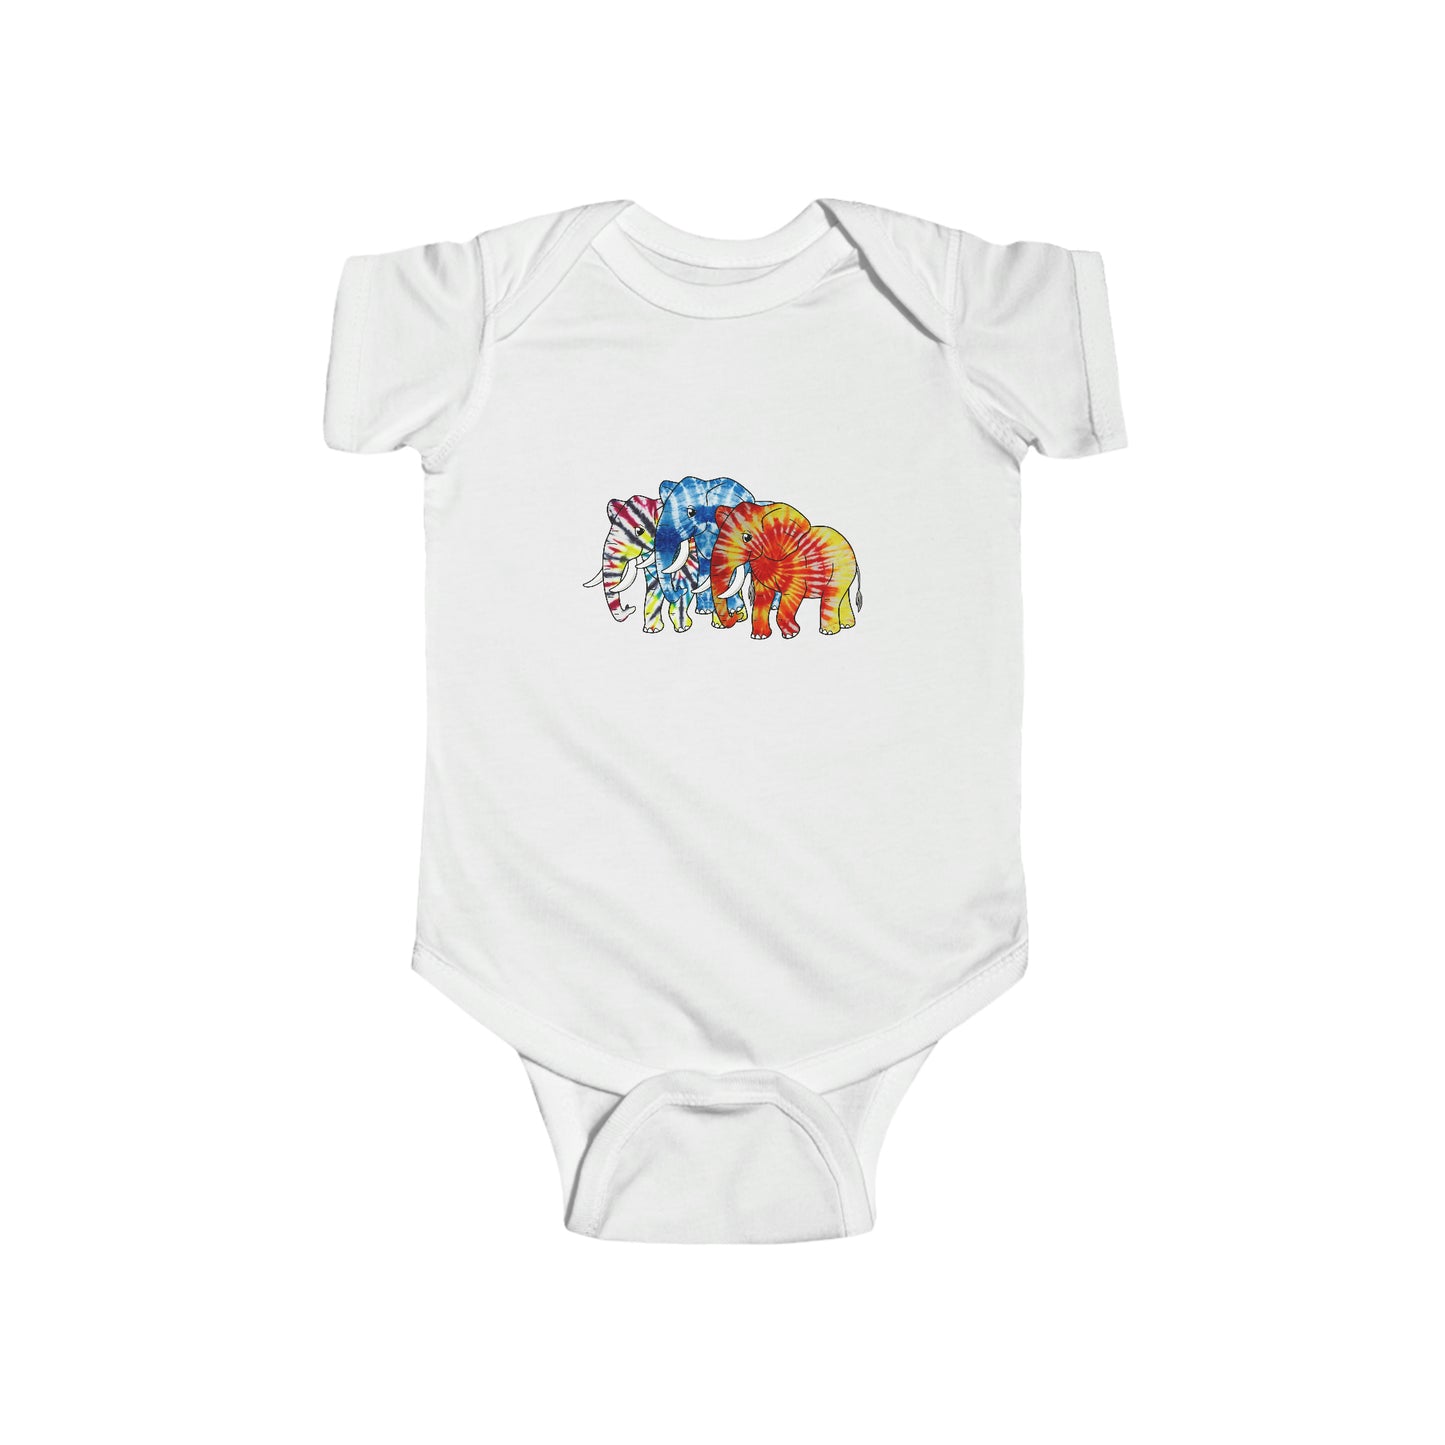 3 Tie Dye Elephants Infant Fine Jersey Bodysuit